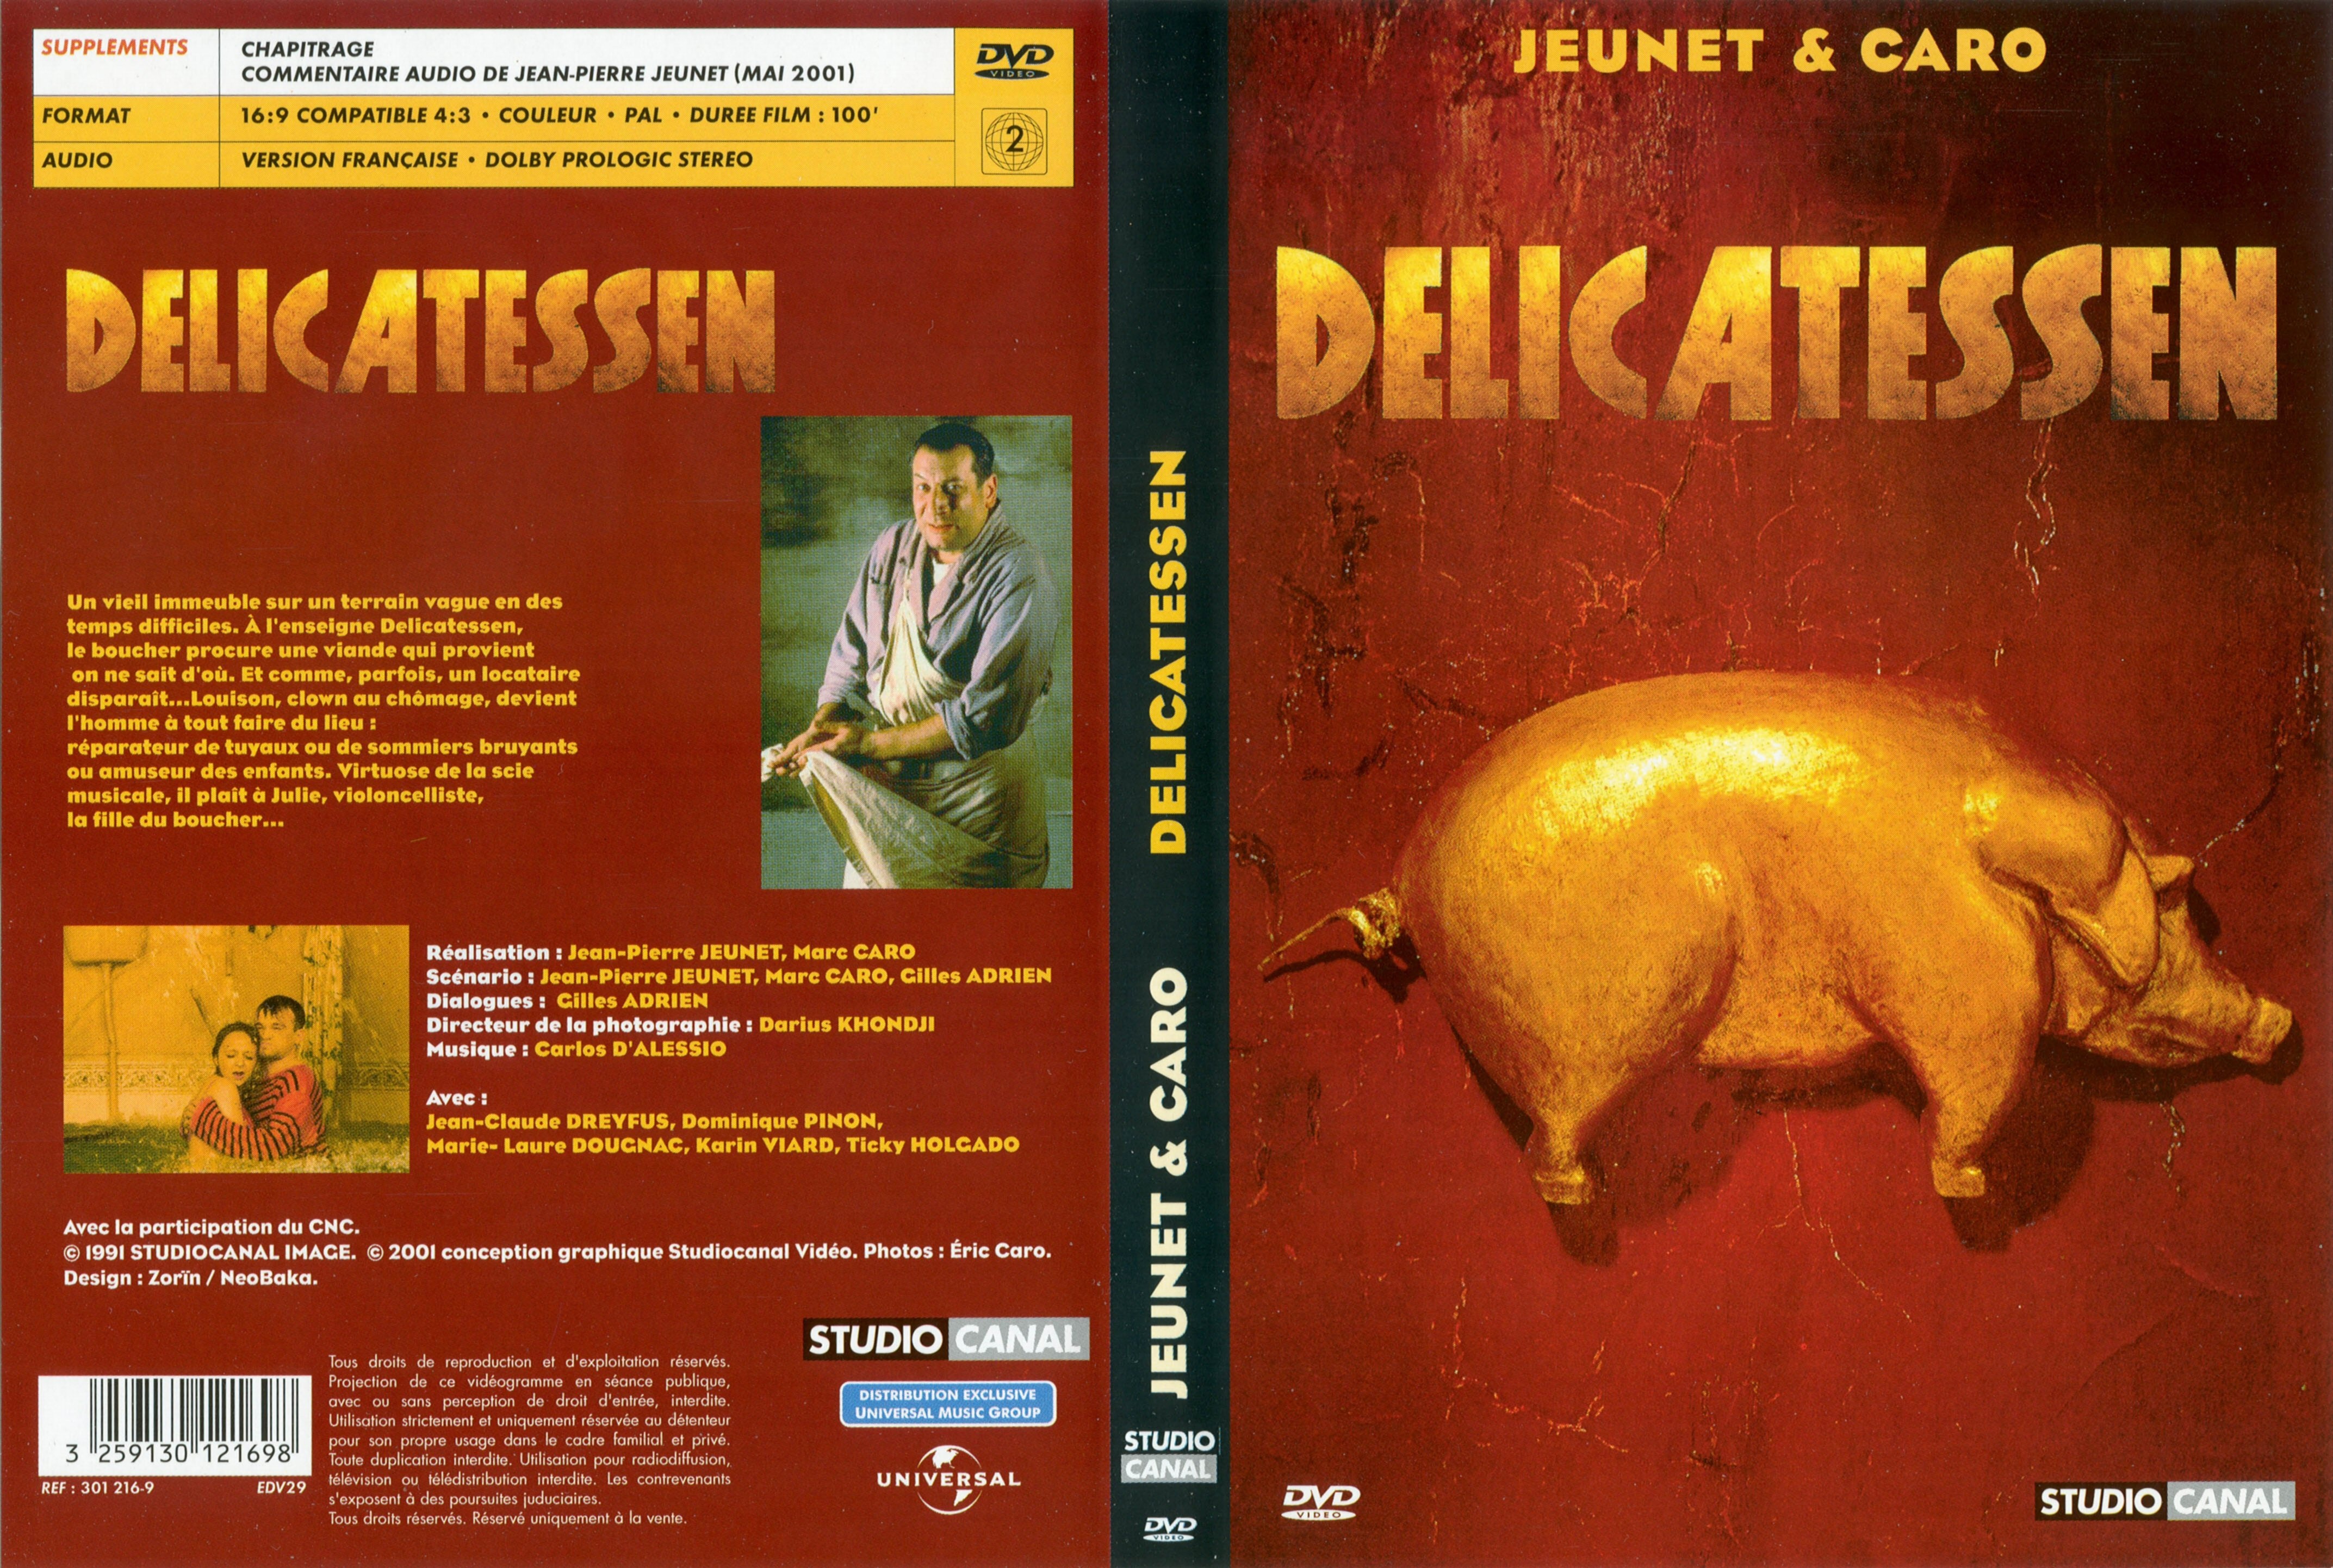 Jaquette DVD Delicatessen v2